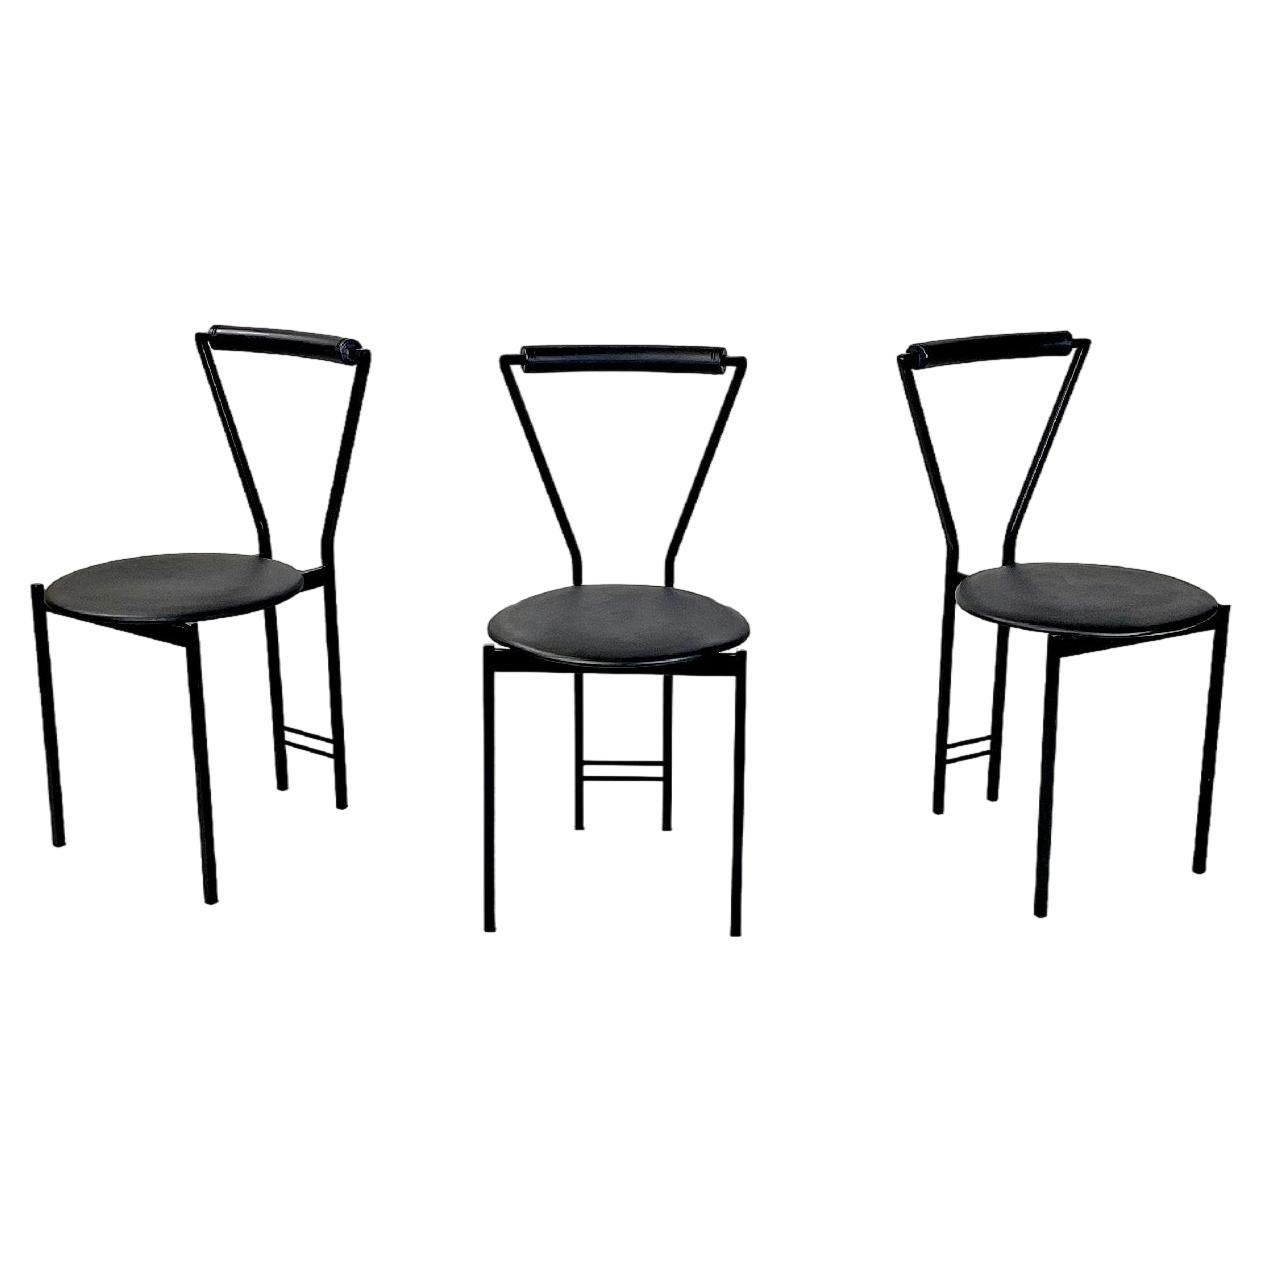 Moderne italienische Stühle aus schwarzem Metall und Gummi, 1980er Jahre